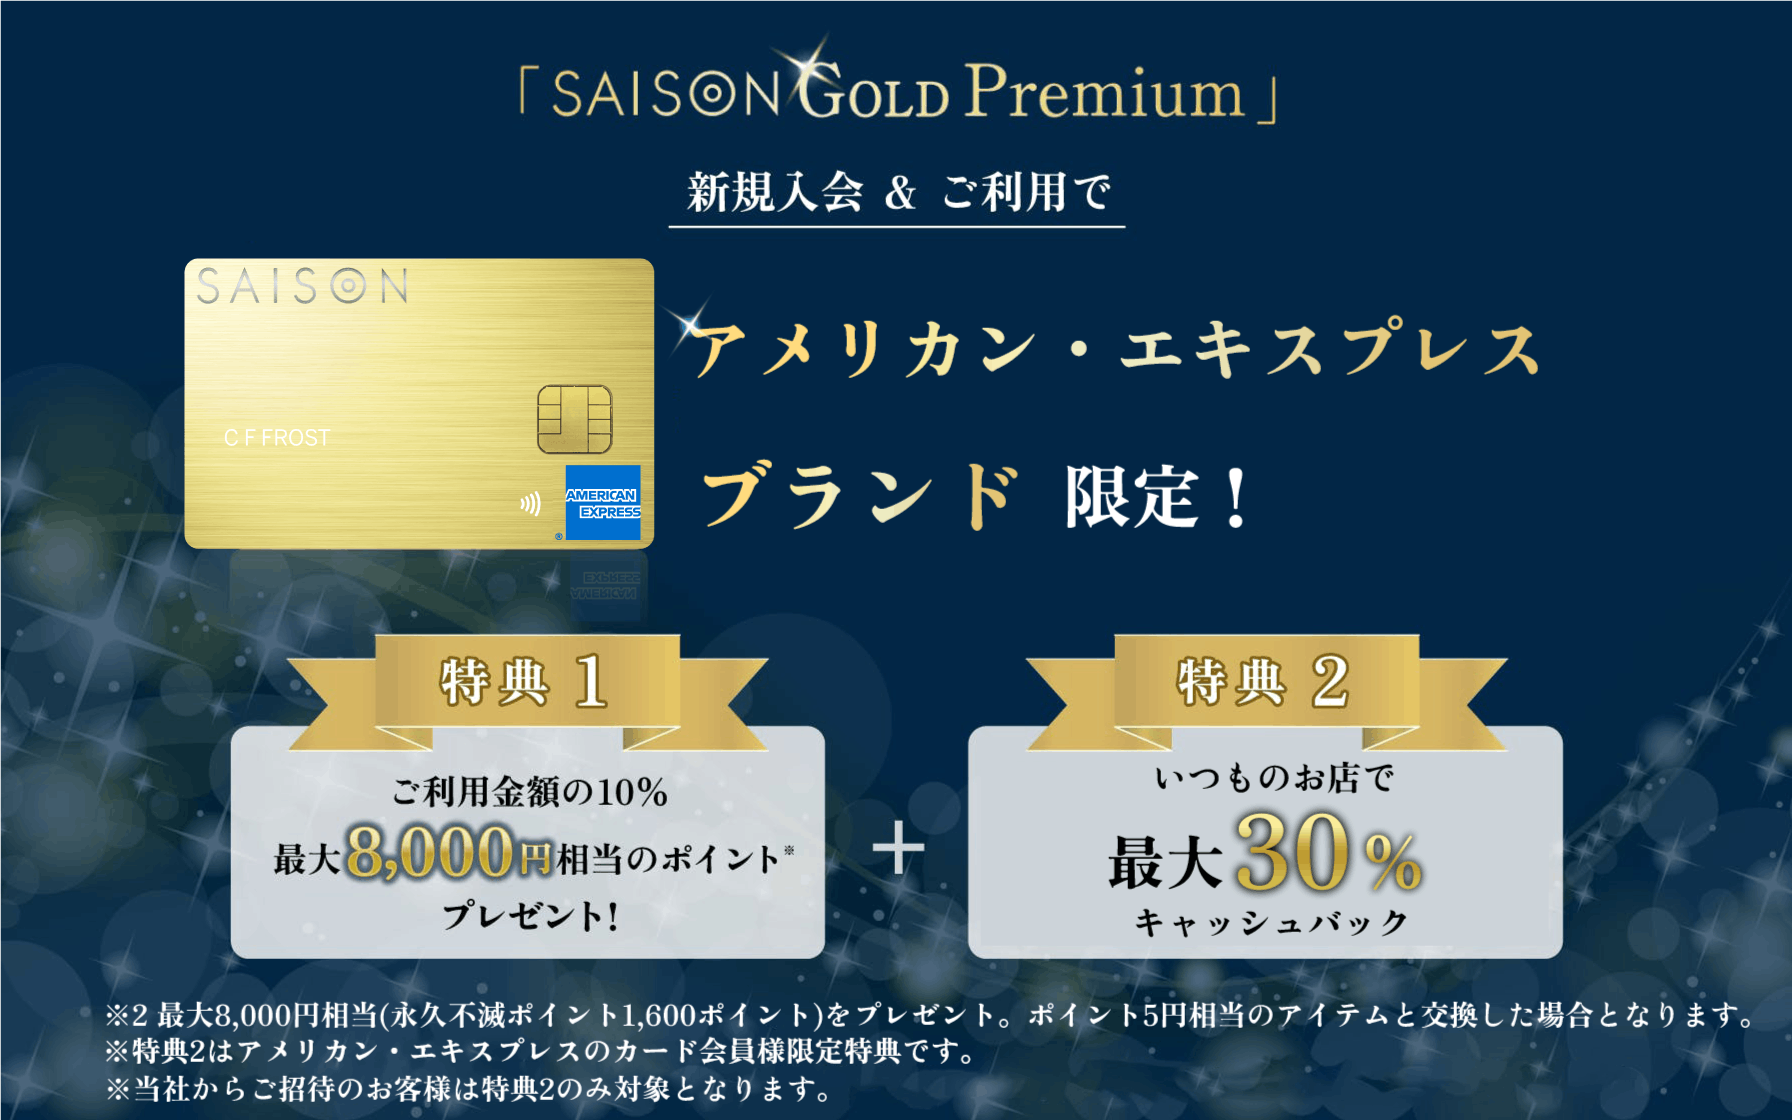 SAISON GOLD Premium アメリカン・エキスプレスブランド限定事前エントリーで対象店舗にて最大30%キャッシュバック